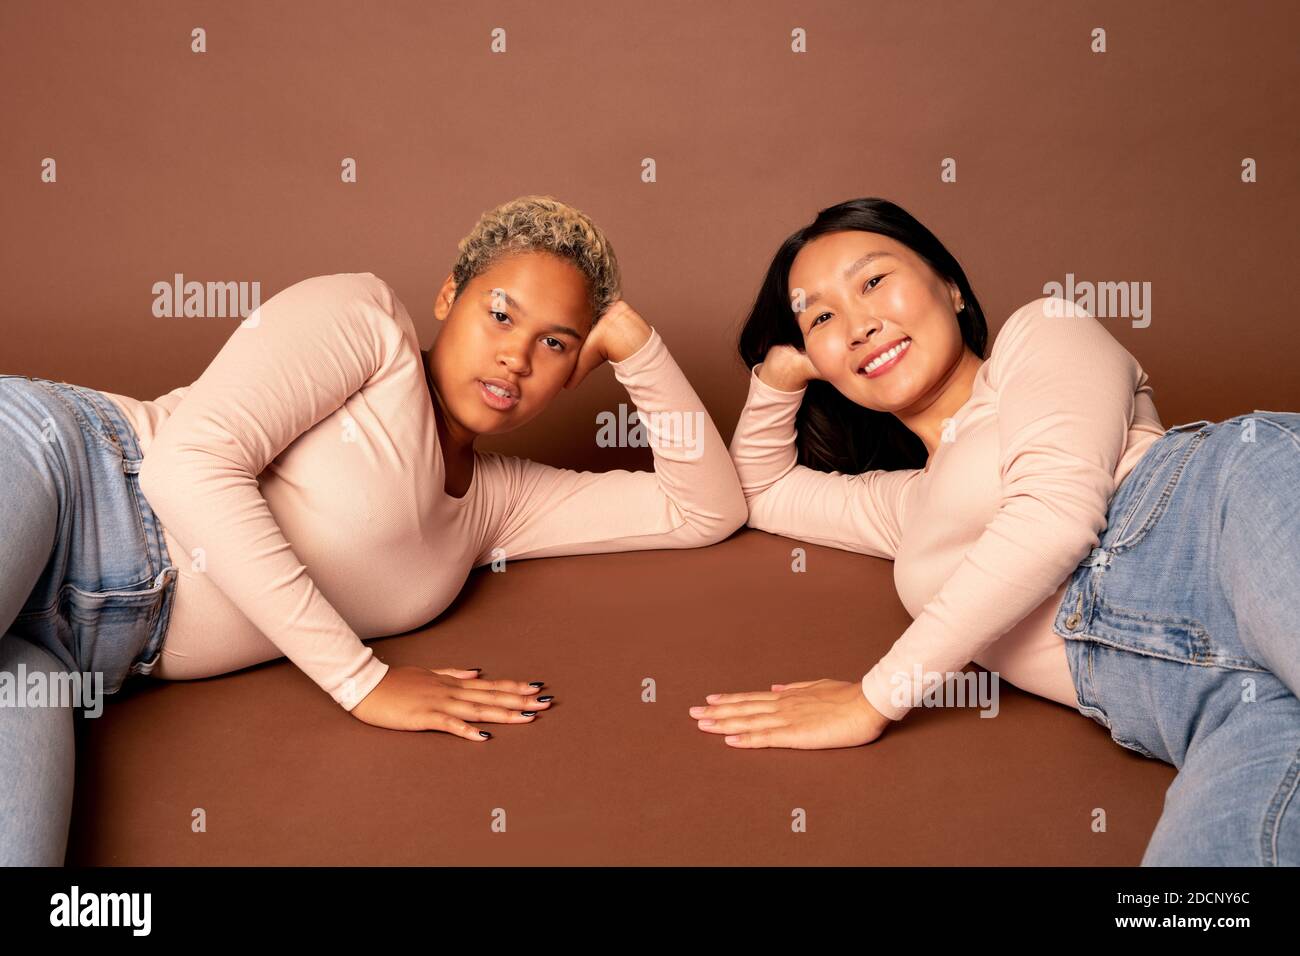 Dos jóvenes mujeres contemporáneas de diversas etnias en jeans y. amantes del pulso Foto de stock